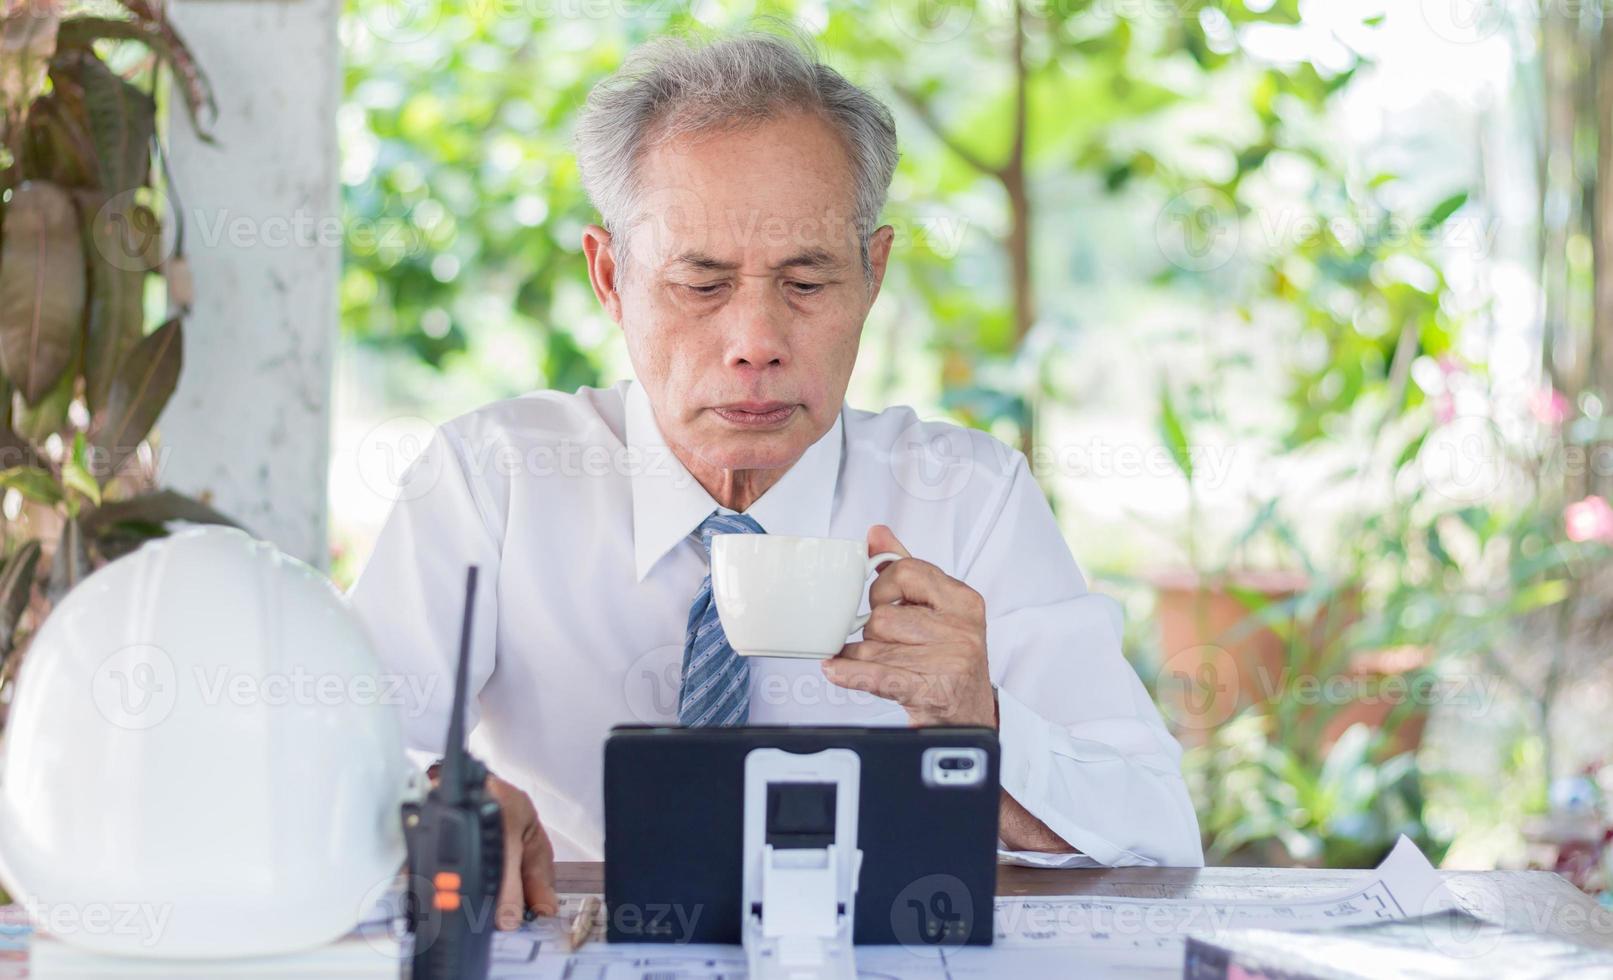 homme d'affaires ou ingénieur lisant une tablette en buvant du café, des aînés asiatiques photo